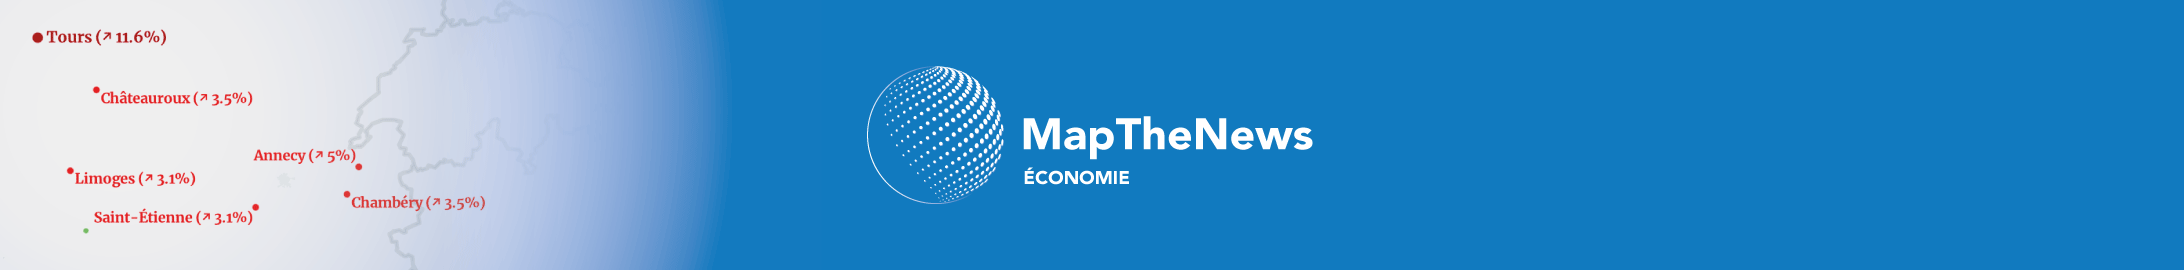 MapTheNews Economie